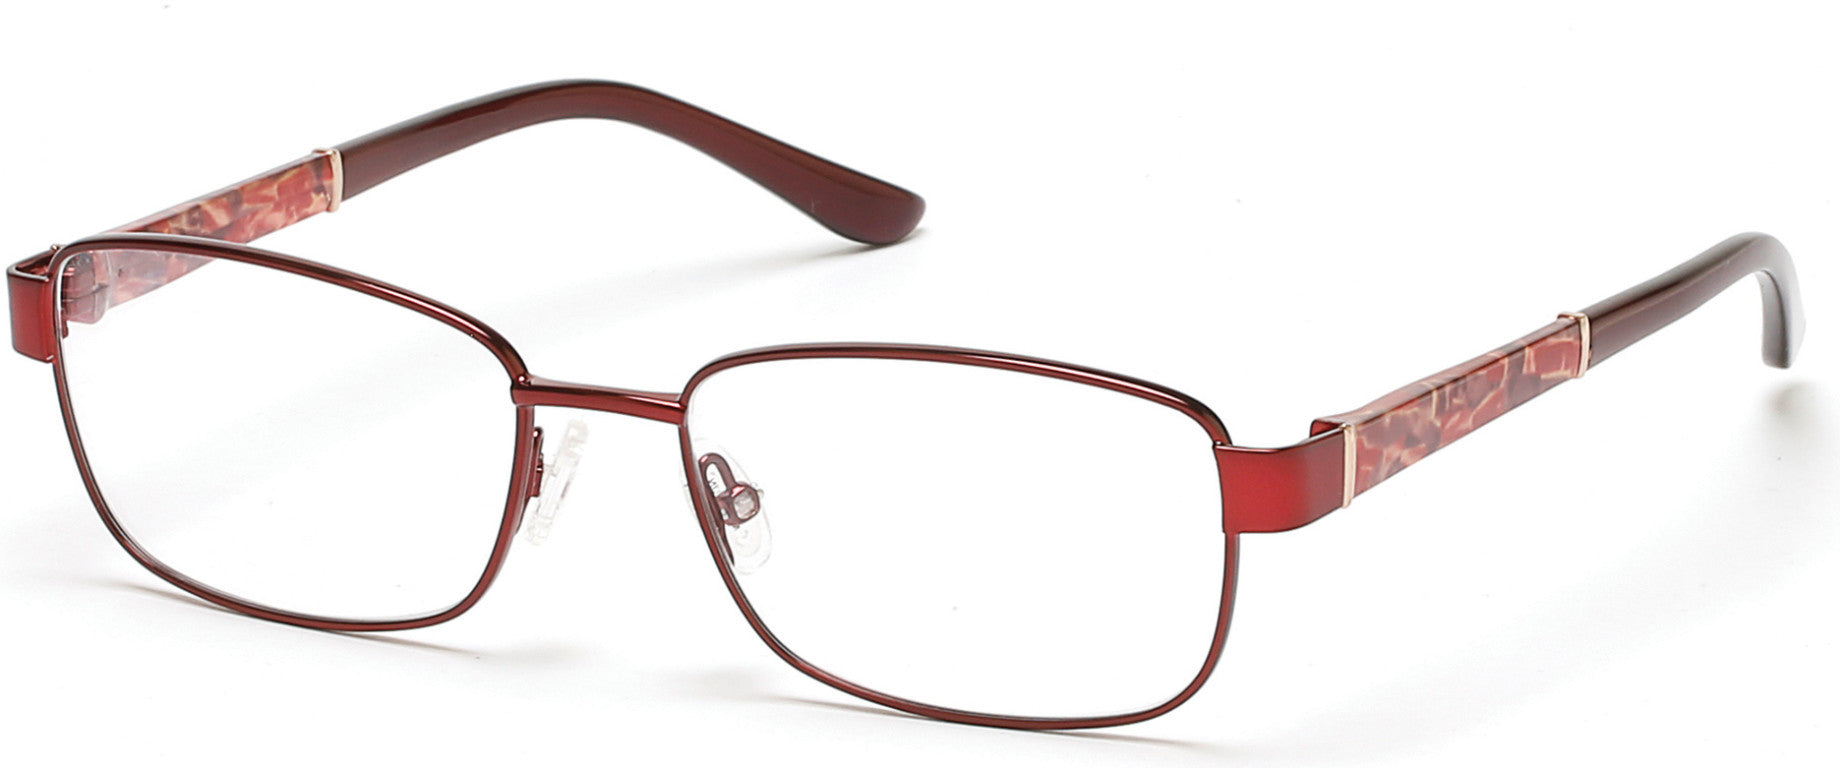 Marcolin MA5007 Eyeglasses 069-069 - Shiny Bordeaux